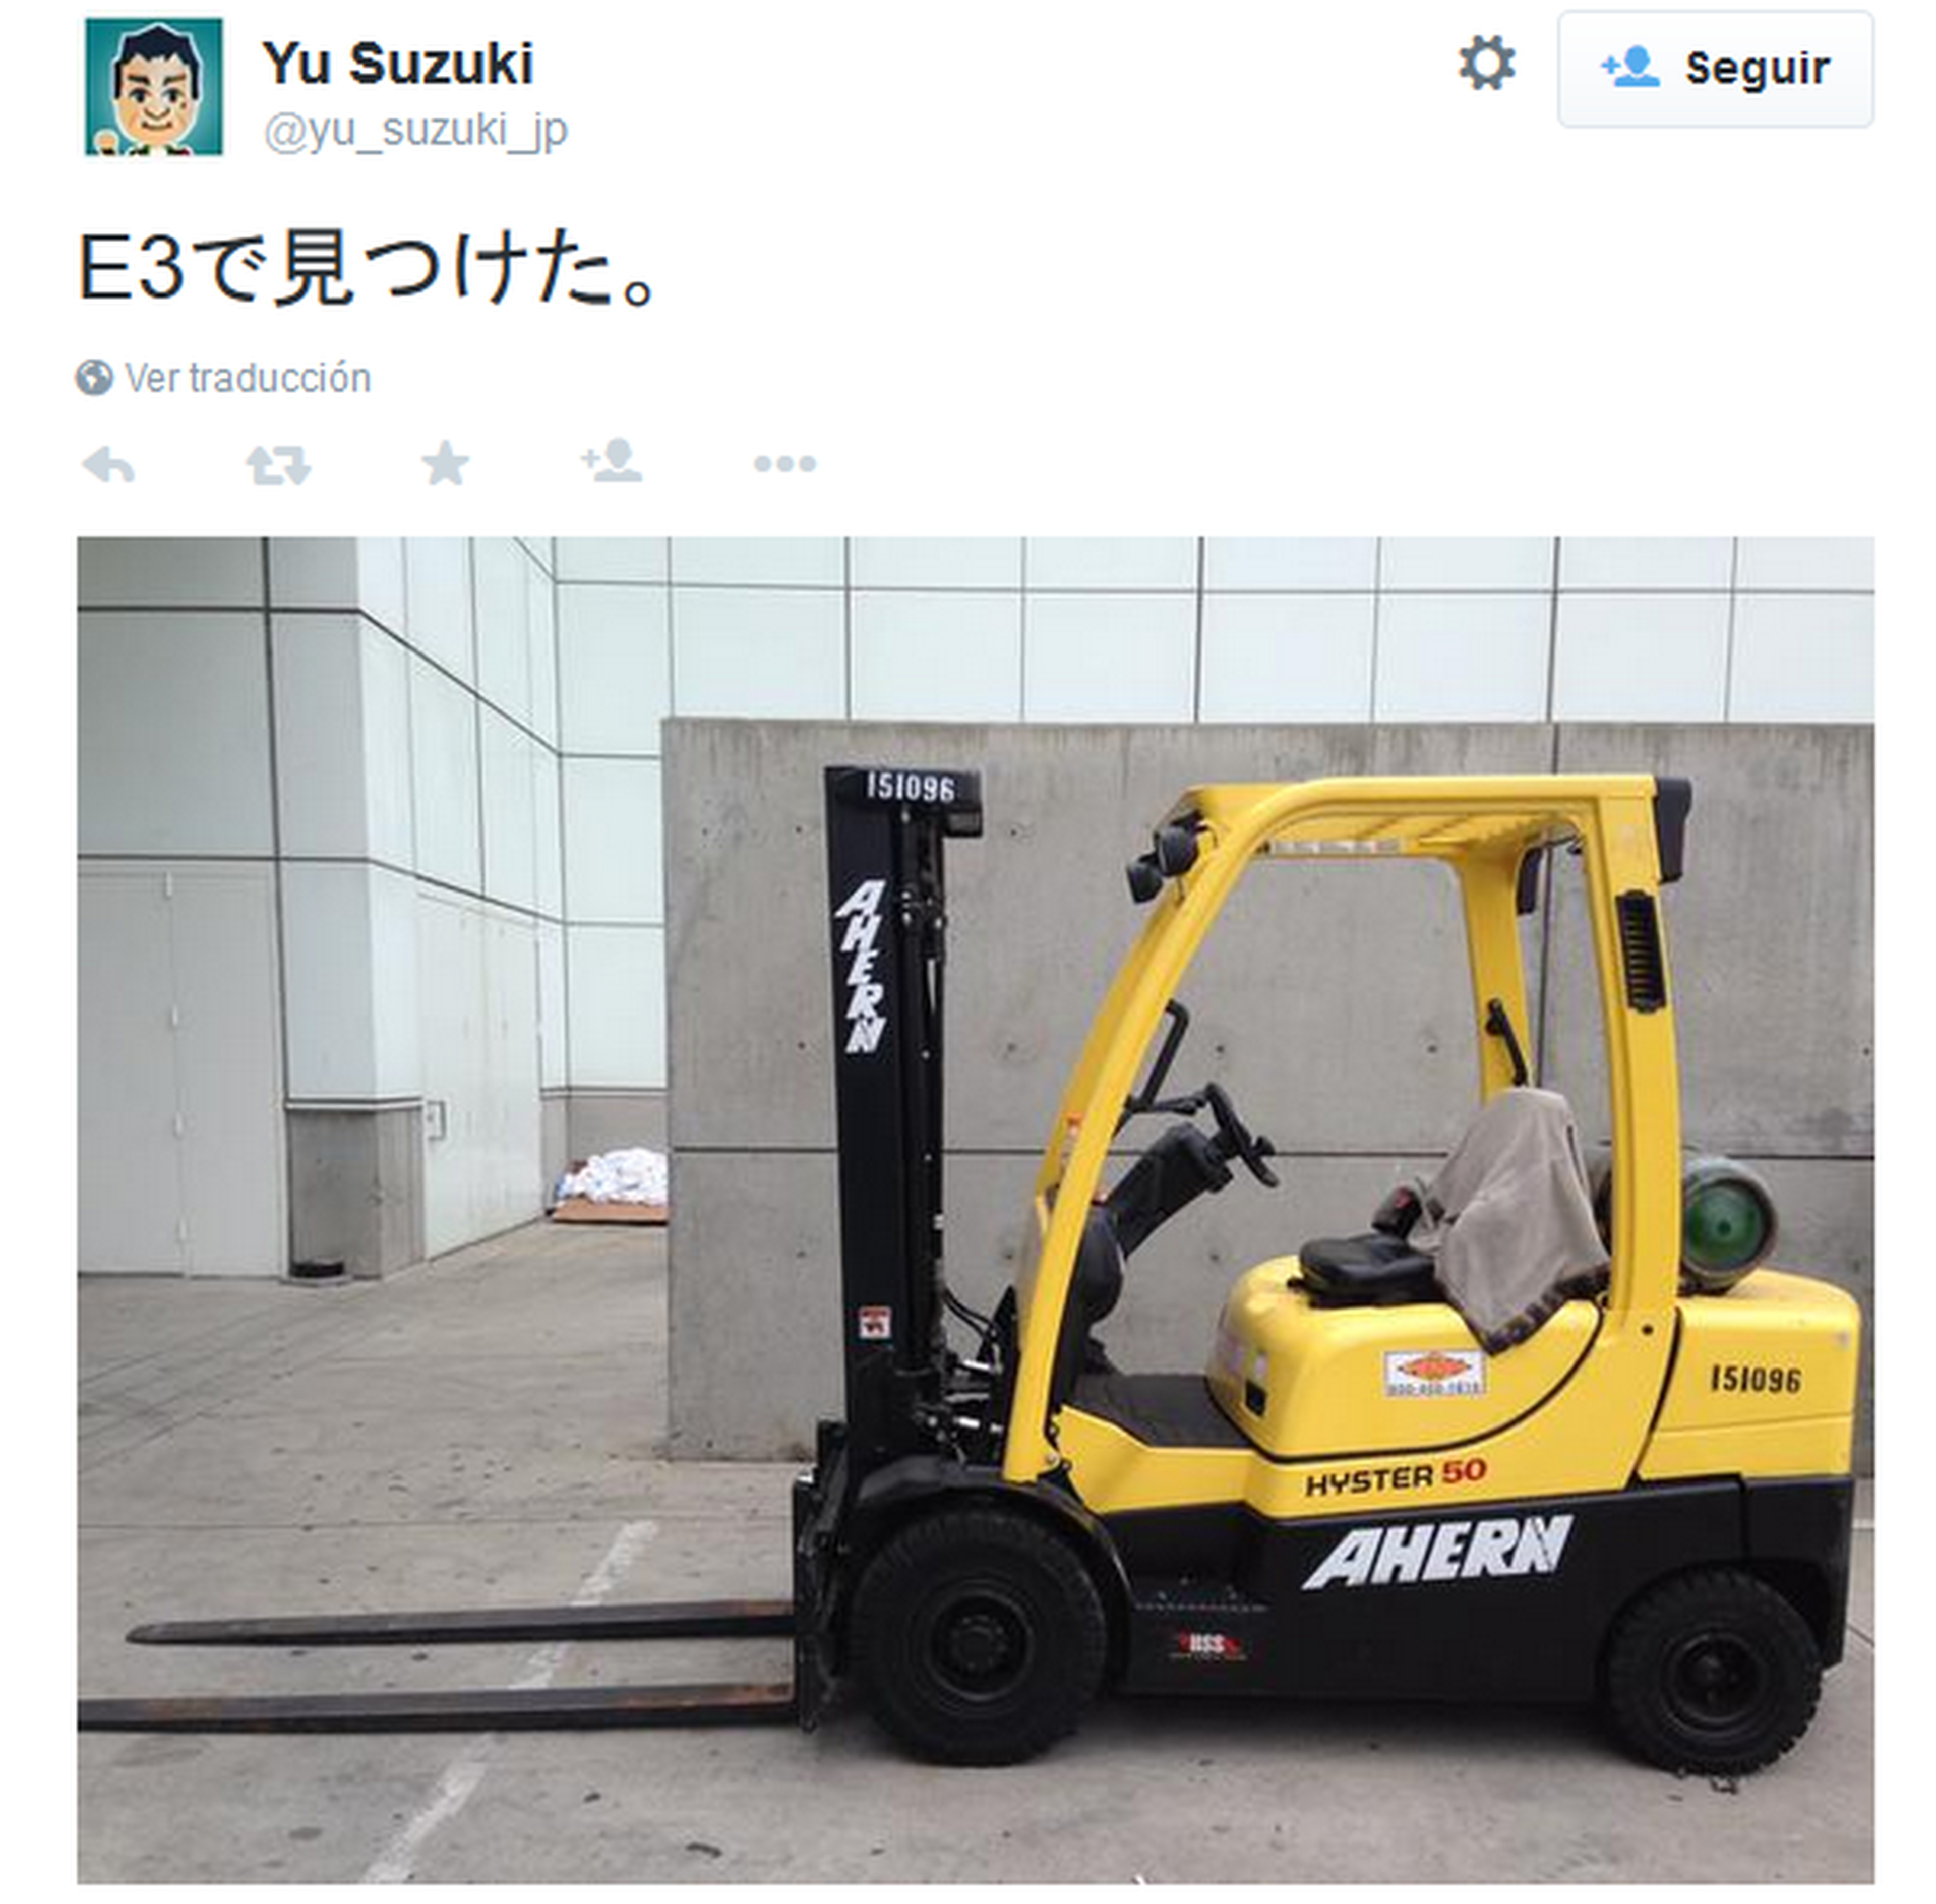 E3 2015: Yu Suzuki en la feria. ¿Shenmue 3 en camino?